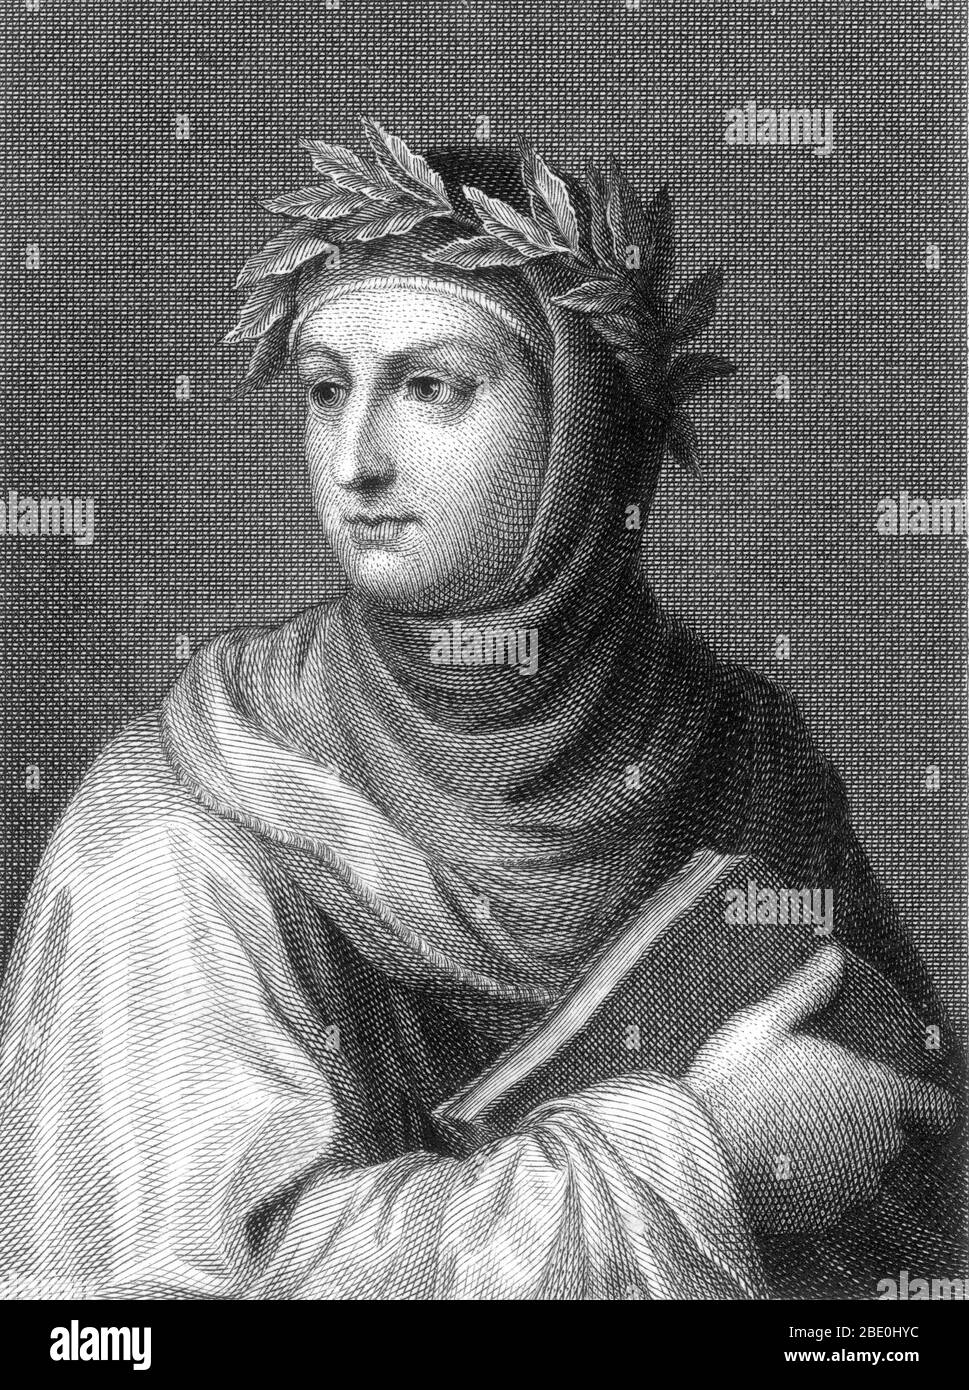 Giovanni Boccaccio (1313 - 21 décembre 1375) était un écrivain, poète, correspondant de Petrarch et un important humaniste de la Renaissance. Il était le fils d'un marchand florentin, Boccacino di Chellino, et d'une femme inconnue; il est probablement né hors mariage. Boccaccio a écrit un certain nombre d'œuvres notables, dont le Decameron et sur les femmes célèbres. En tant que poète qui a écrit dans la vernaculaire italienne, Boccaccio est particulièrement noté pour son dialogue réaliste, qui diffère de celui de ses contemporains, écrivains médiévaux qui ont habituellement suivi des modèles de formule pour le caractère et le complot. Ses dernières années Banque D'Images